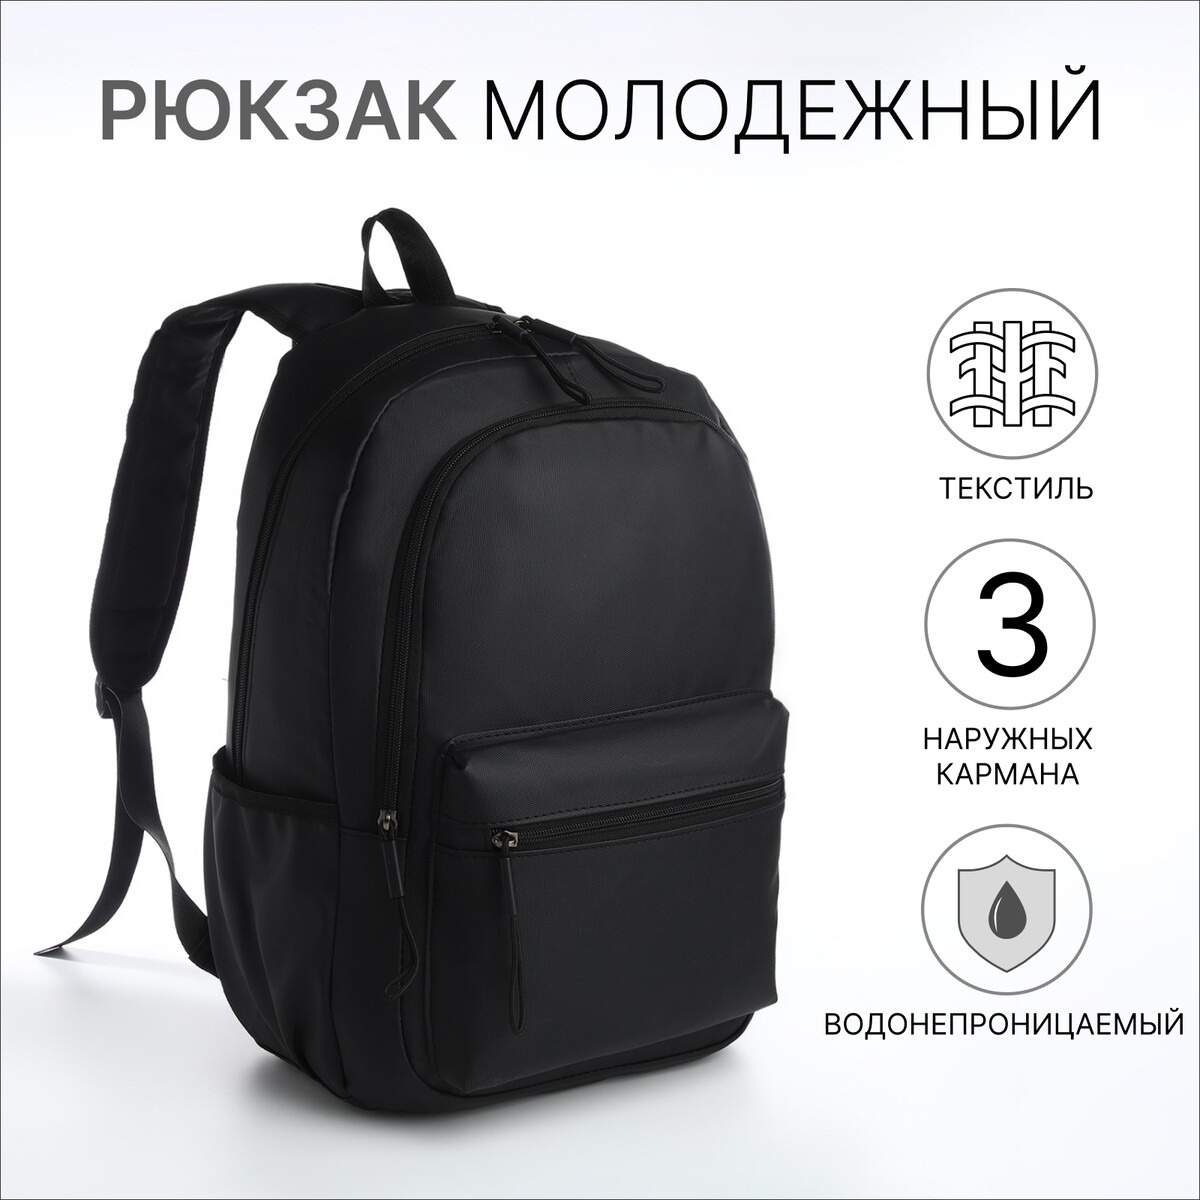 Рюкзак молодежный из текстиля на молнии, непромокаемый, 3 кармана, цвет черный полукомбинезон непромокаемый на лямках button blue 116